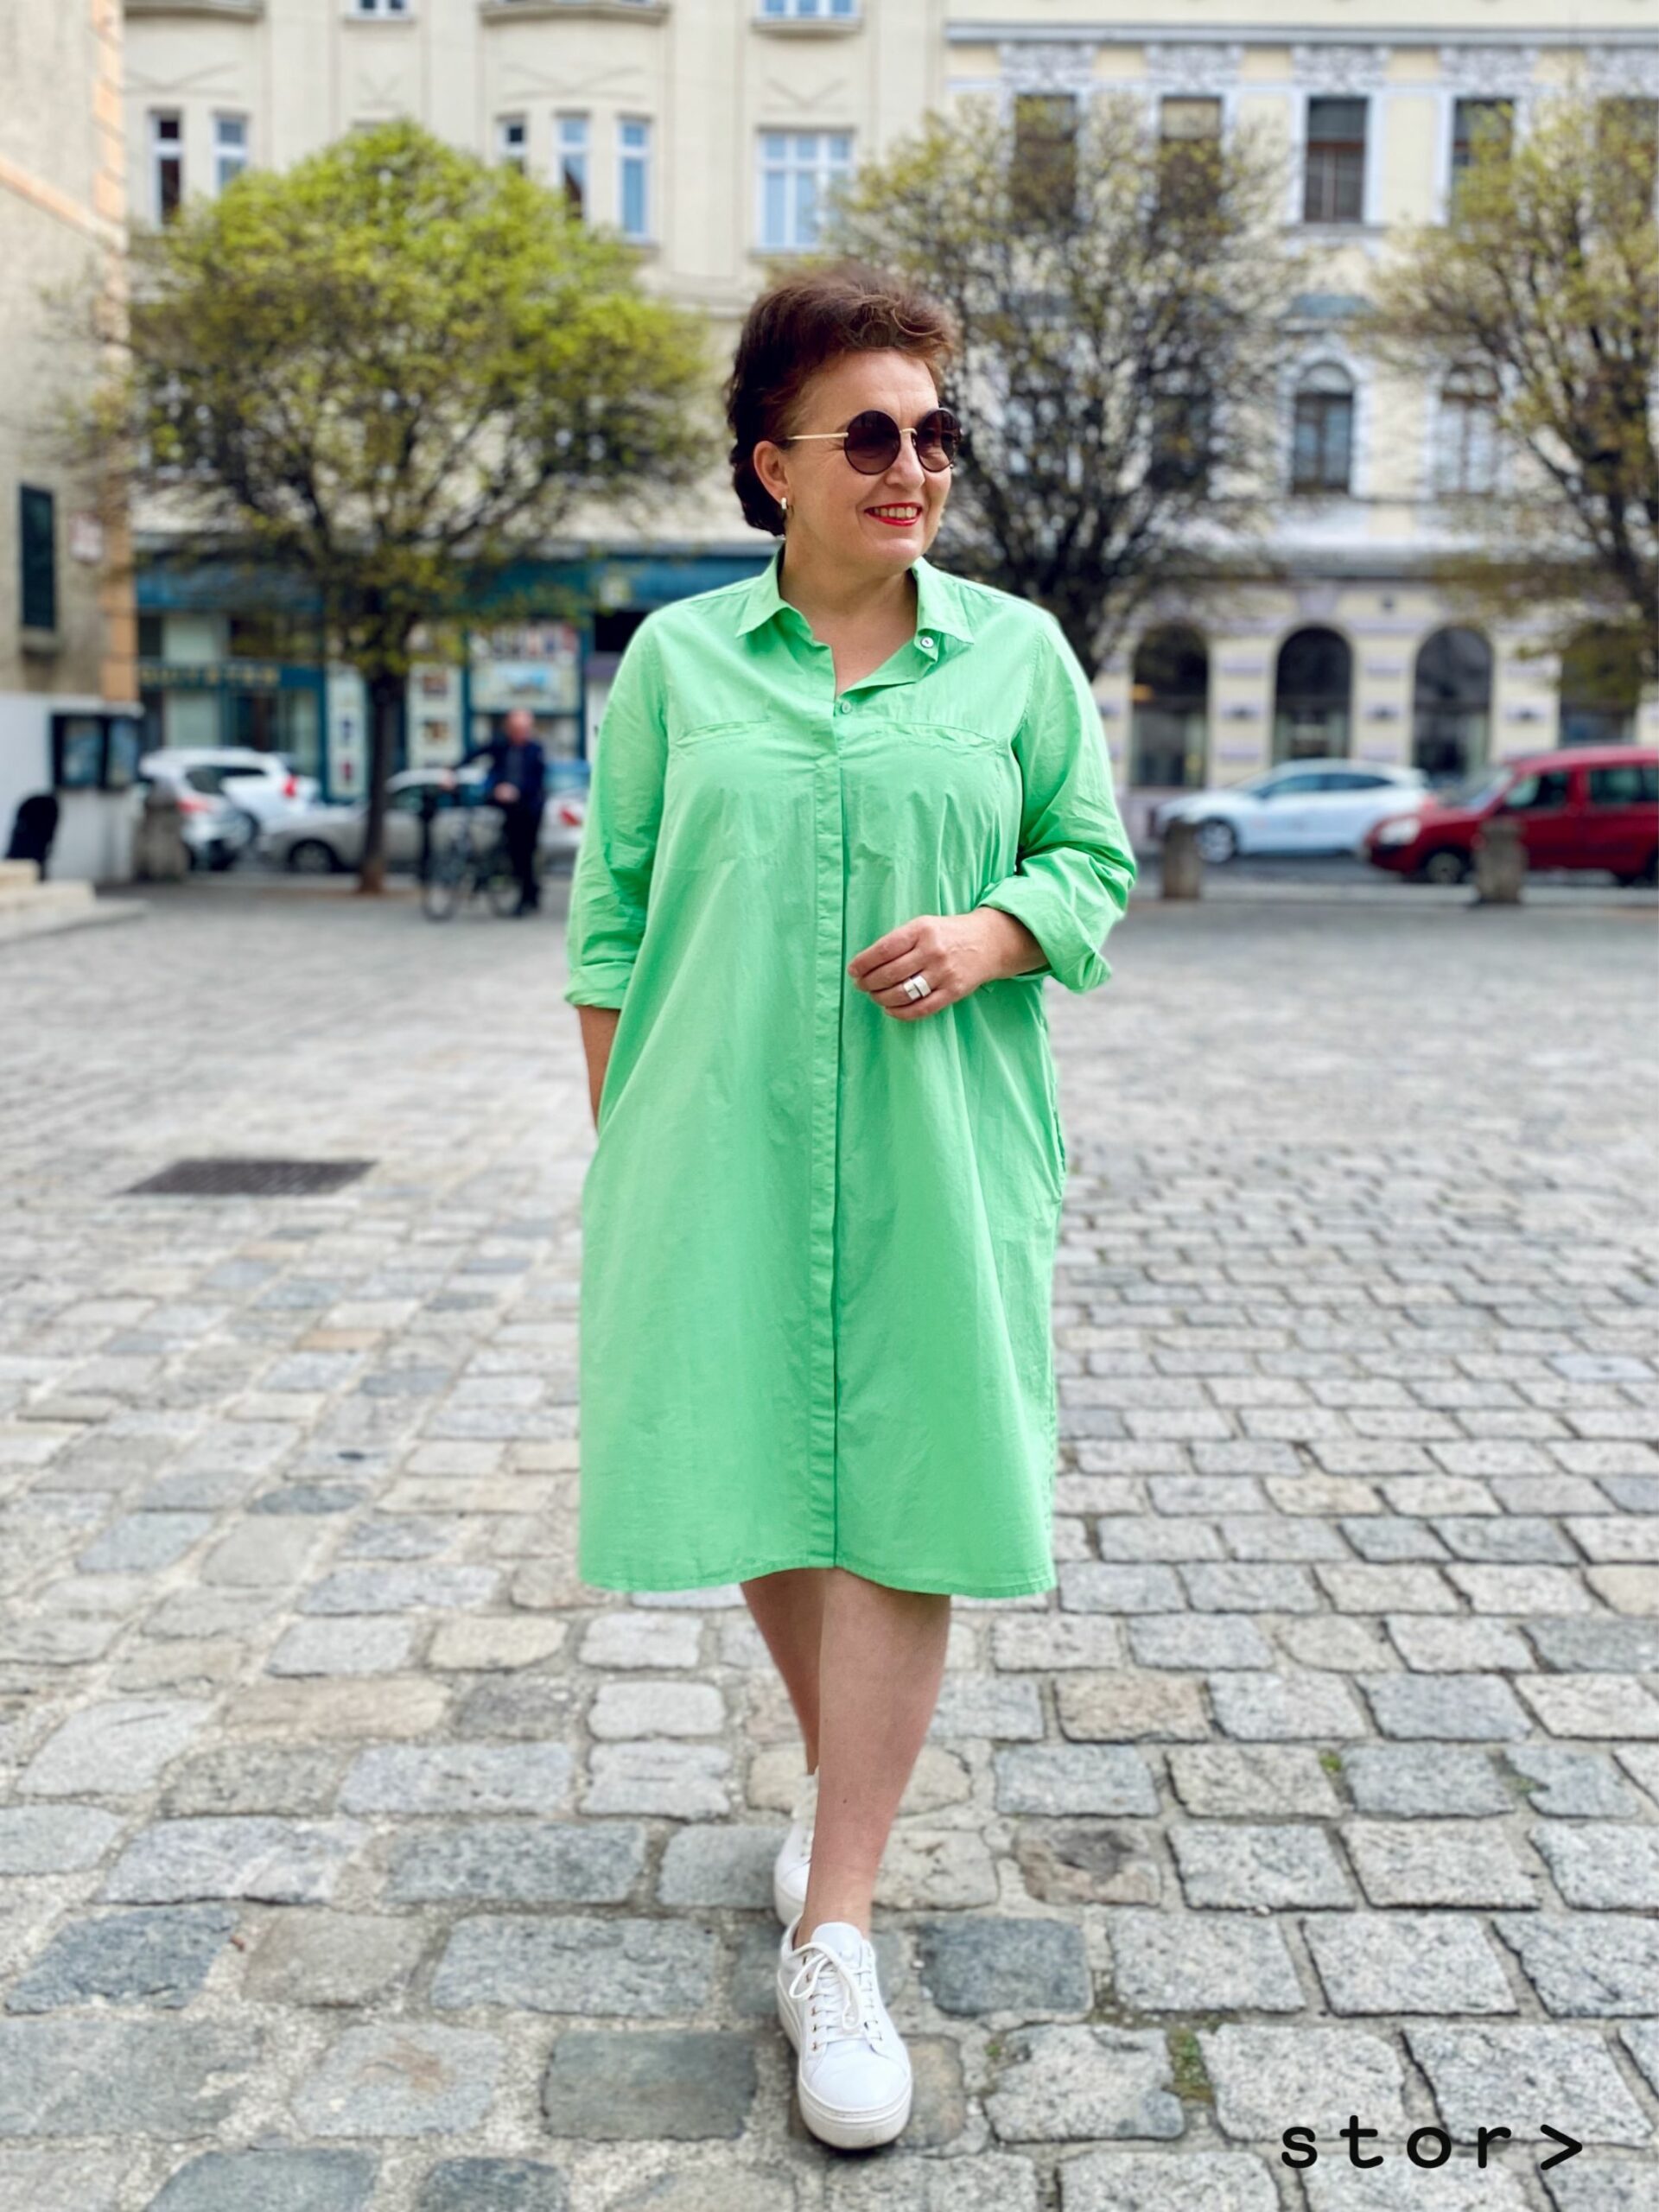 Kleider in großen Größen von stor> Wien, hier sehen sie ein Mintgrünes Hemdblusenkleid.